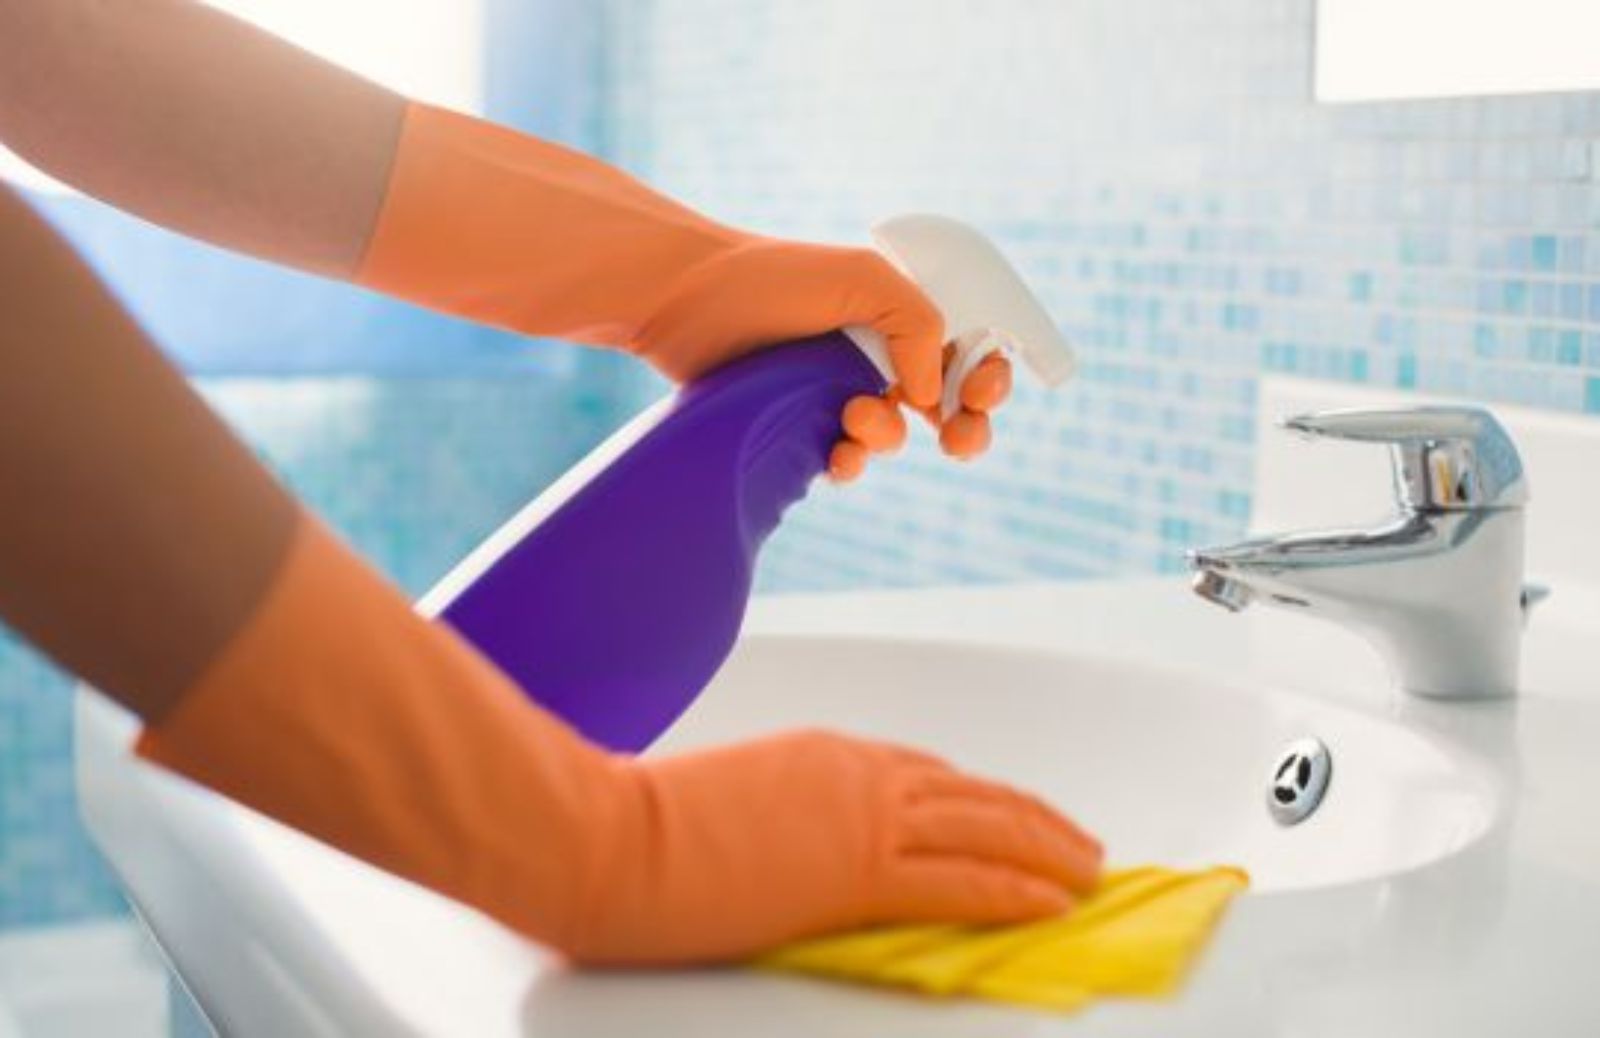 Pulizia ecologica: come pulire bagno e cucina